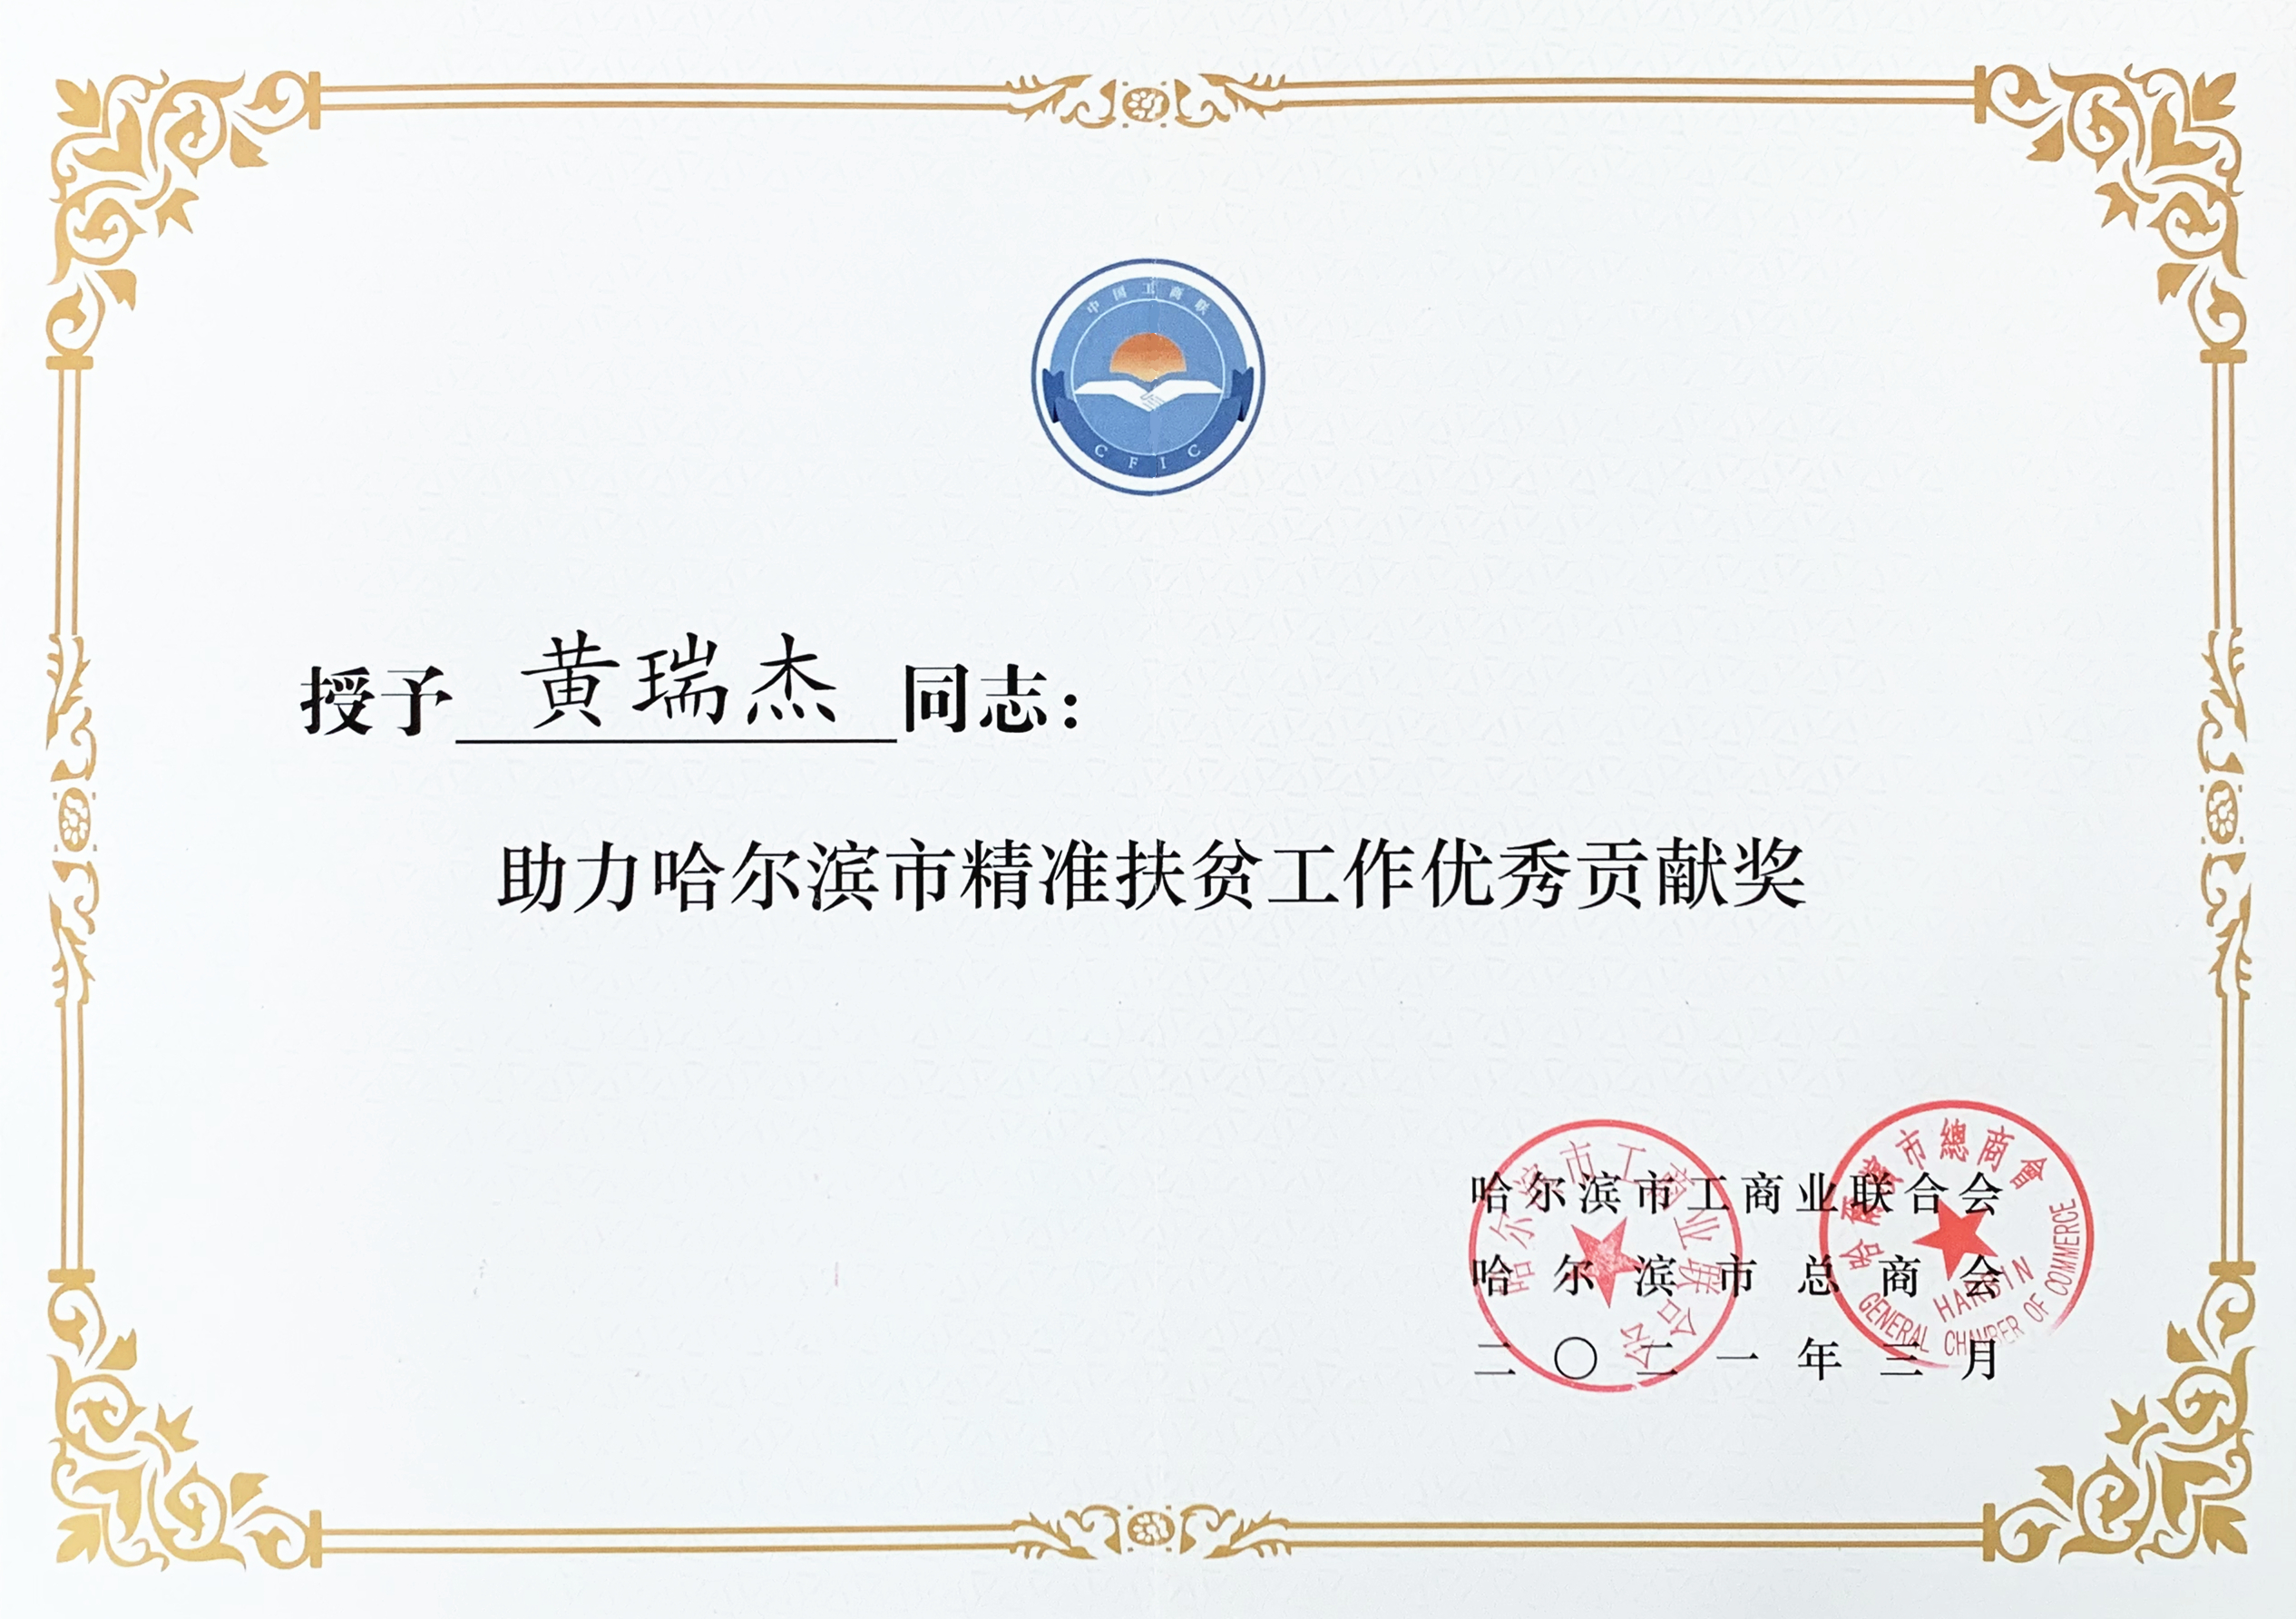 践初心、作表率 ——哈尔滨市广东商会获得多项荣誉表彰(图7)